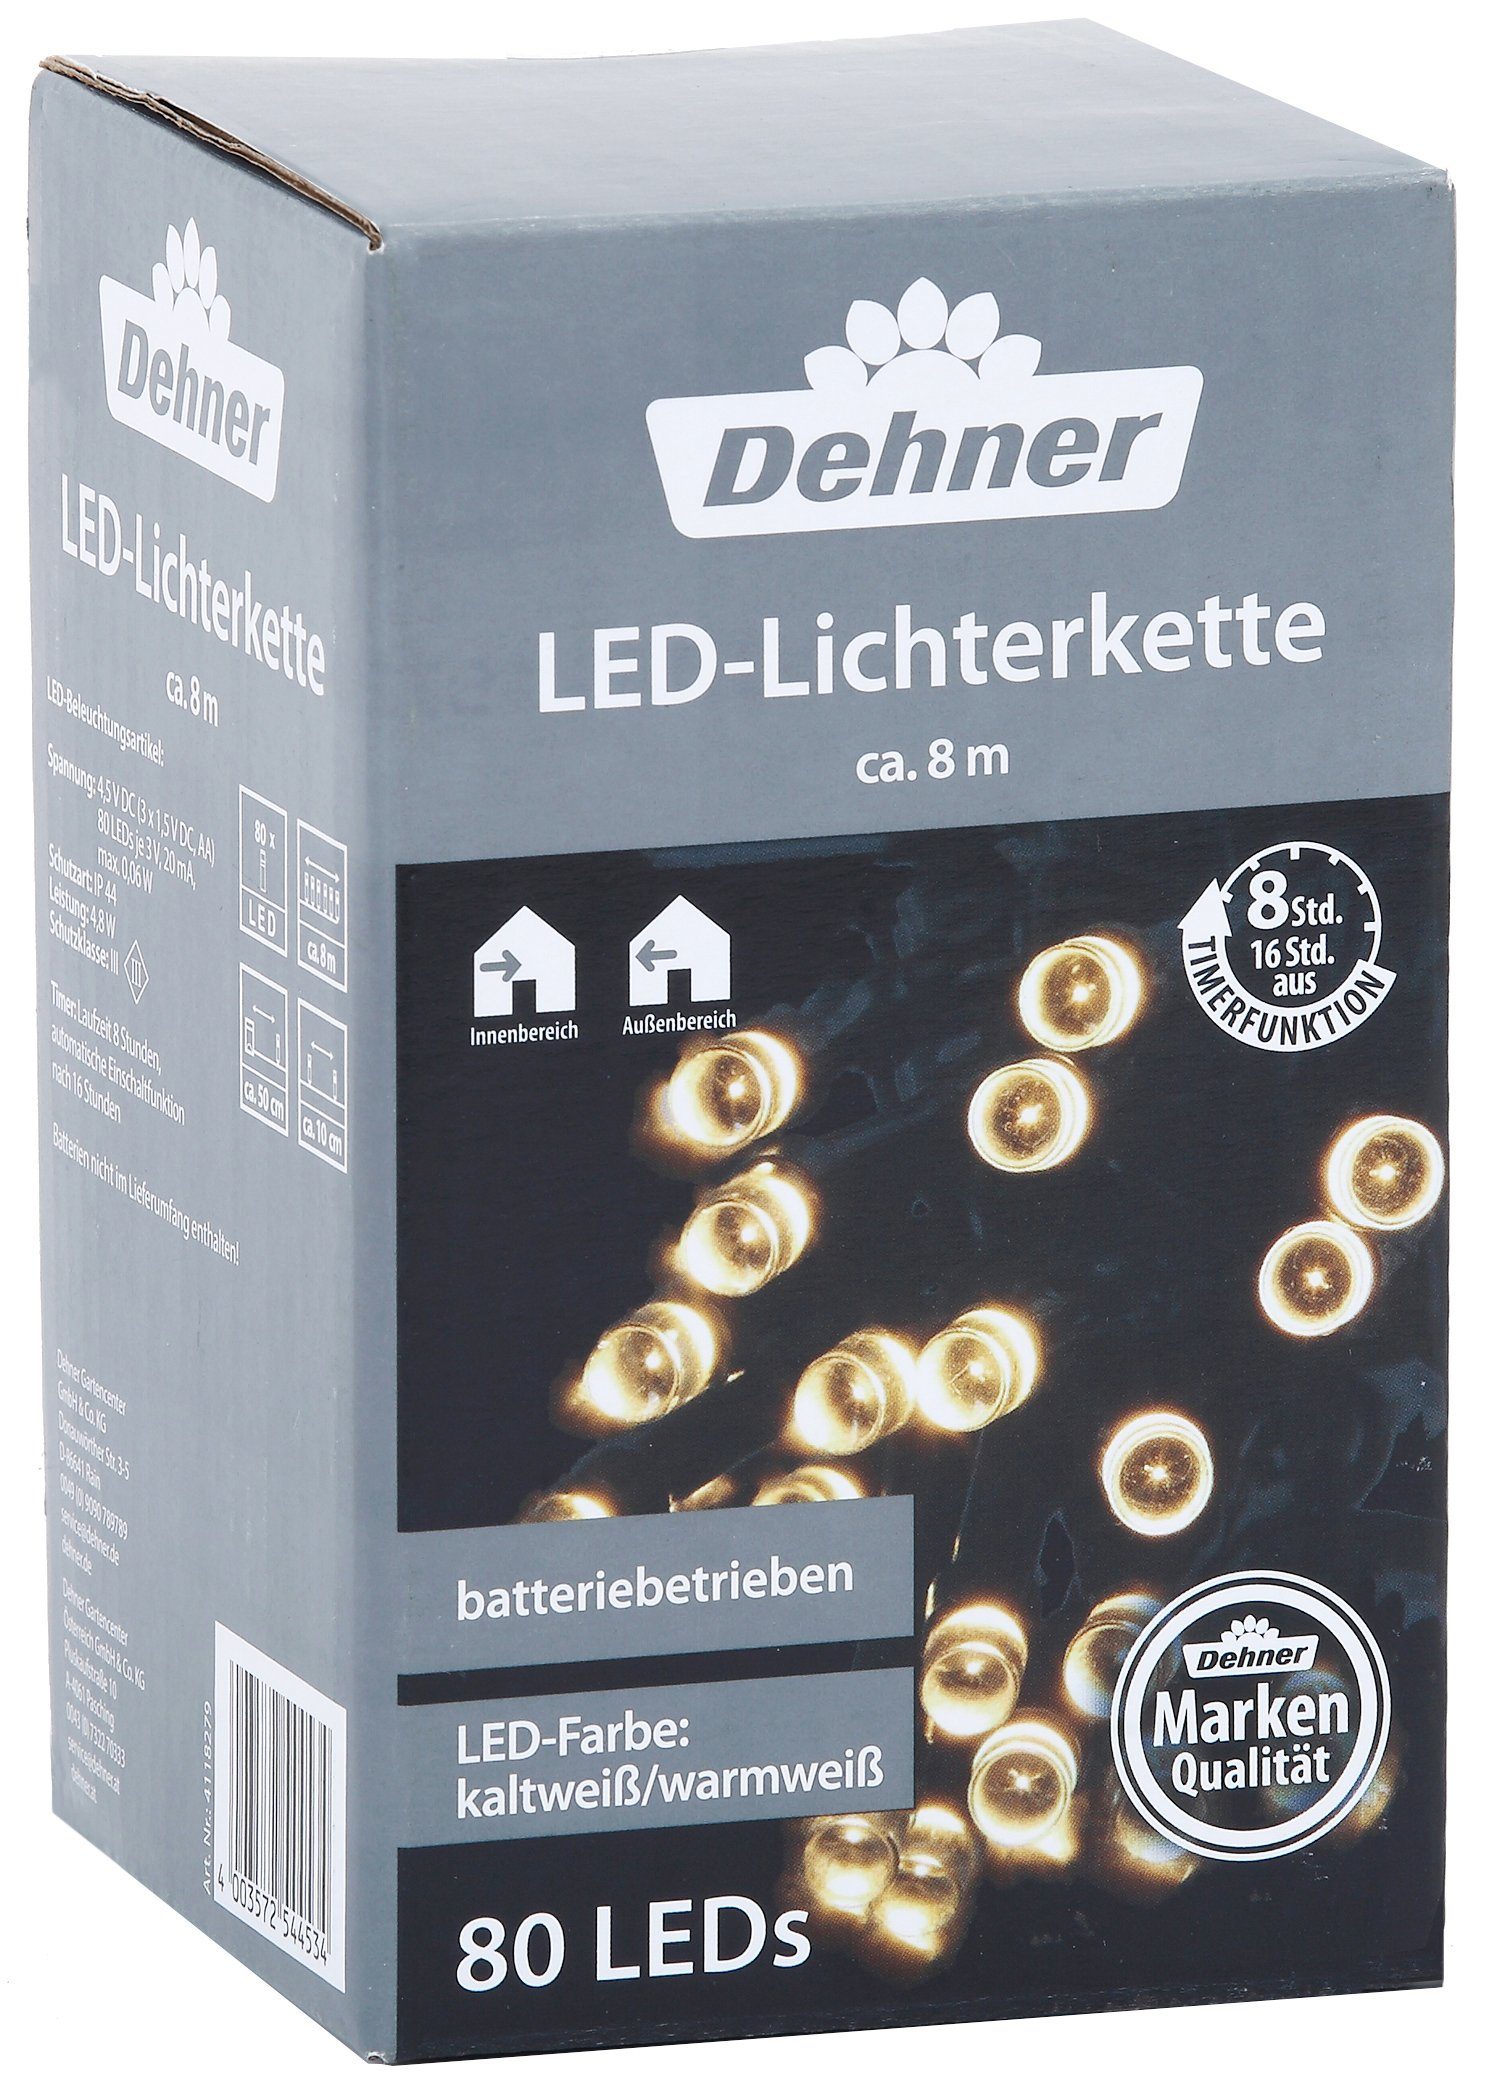 Dehner LED-Lichterkette LED-Lichterkette, 80 LEDs, kaltweiß / warmweiß, batteriebetrieben, Innen / Außen, Schutzart IP44